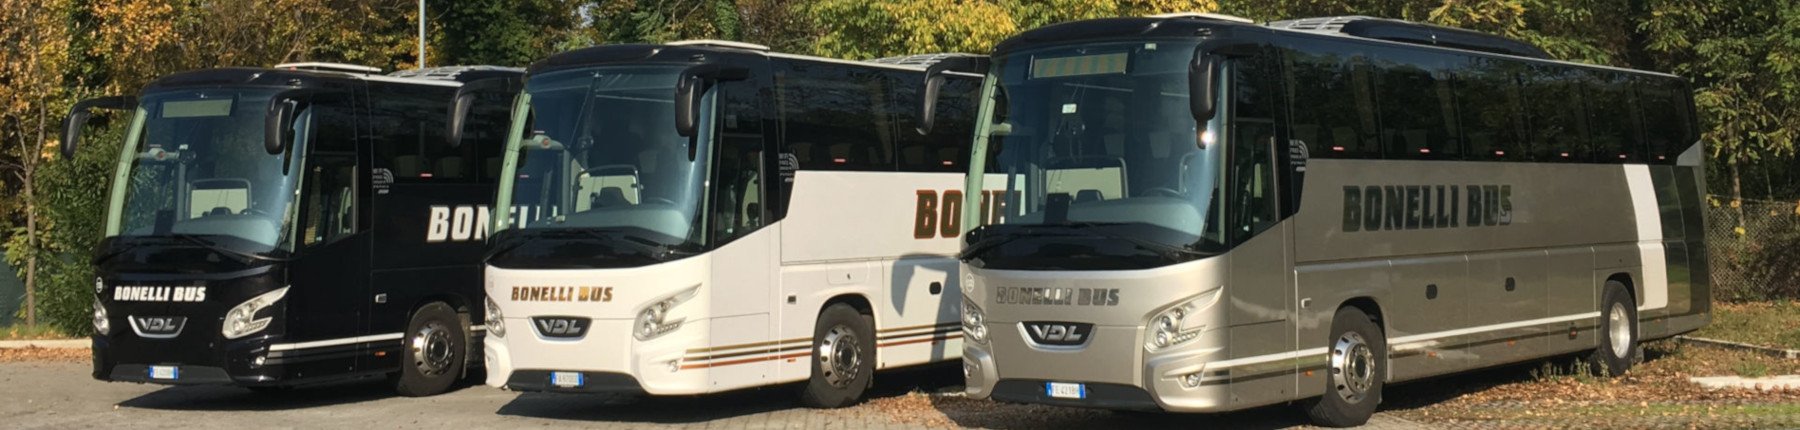 Bonelli Bus nuestros servicios en Rimini, Riccione, Cattolica, Cesenatico.